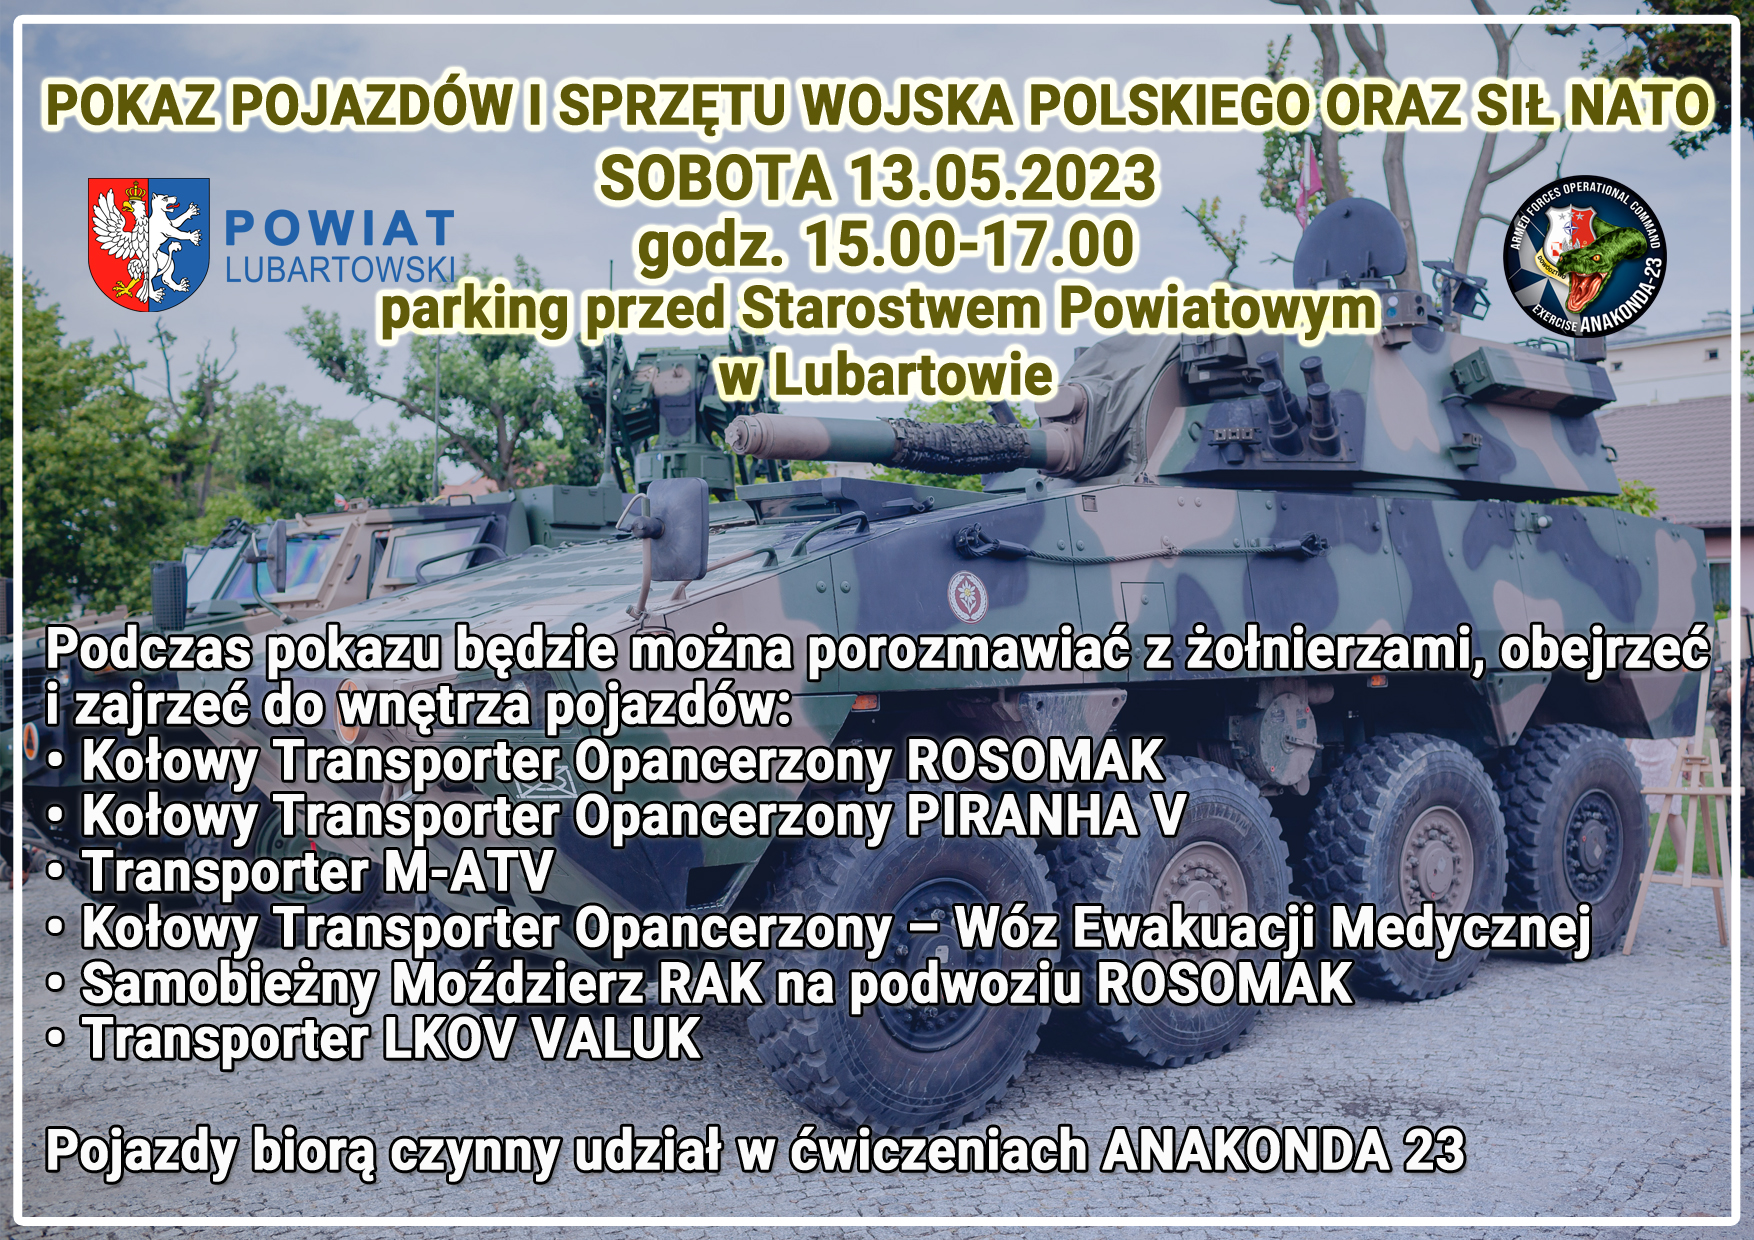 Miniaturka artykułu Pokaz pojazdów i sprzętu wojska polskiego oraz sił NATO